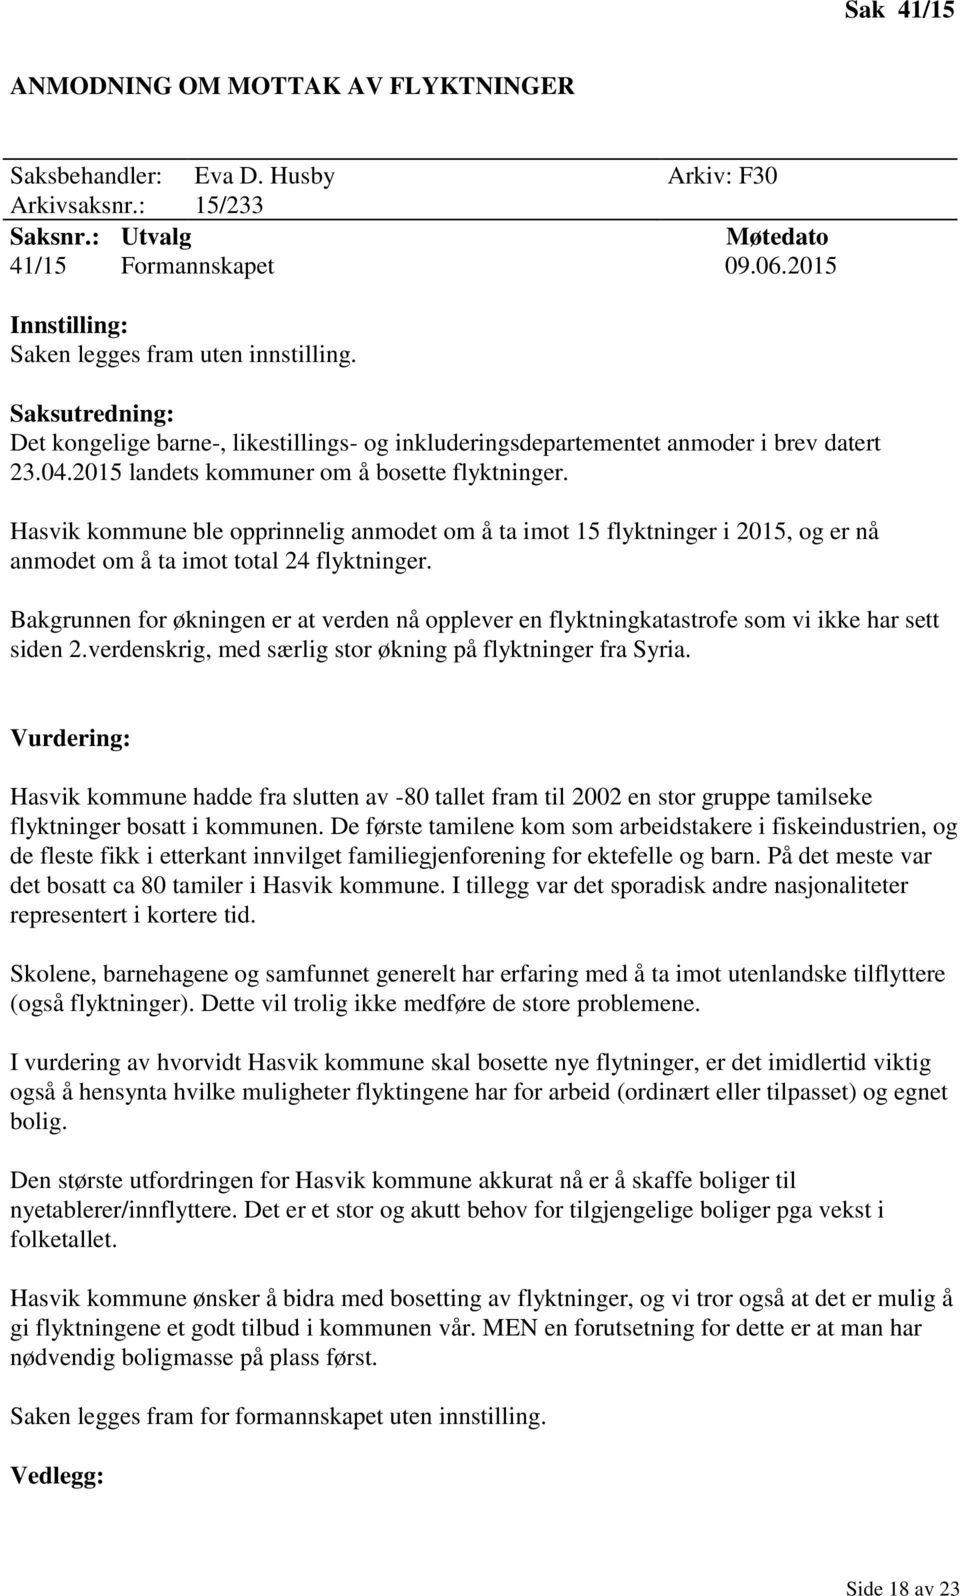 Hasvik kommune ble opprinnelig anmodet om å ta imot 15 flyktninger i 2015, og er nå anmodet om å ta imot total 24 flyktninger.